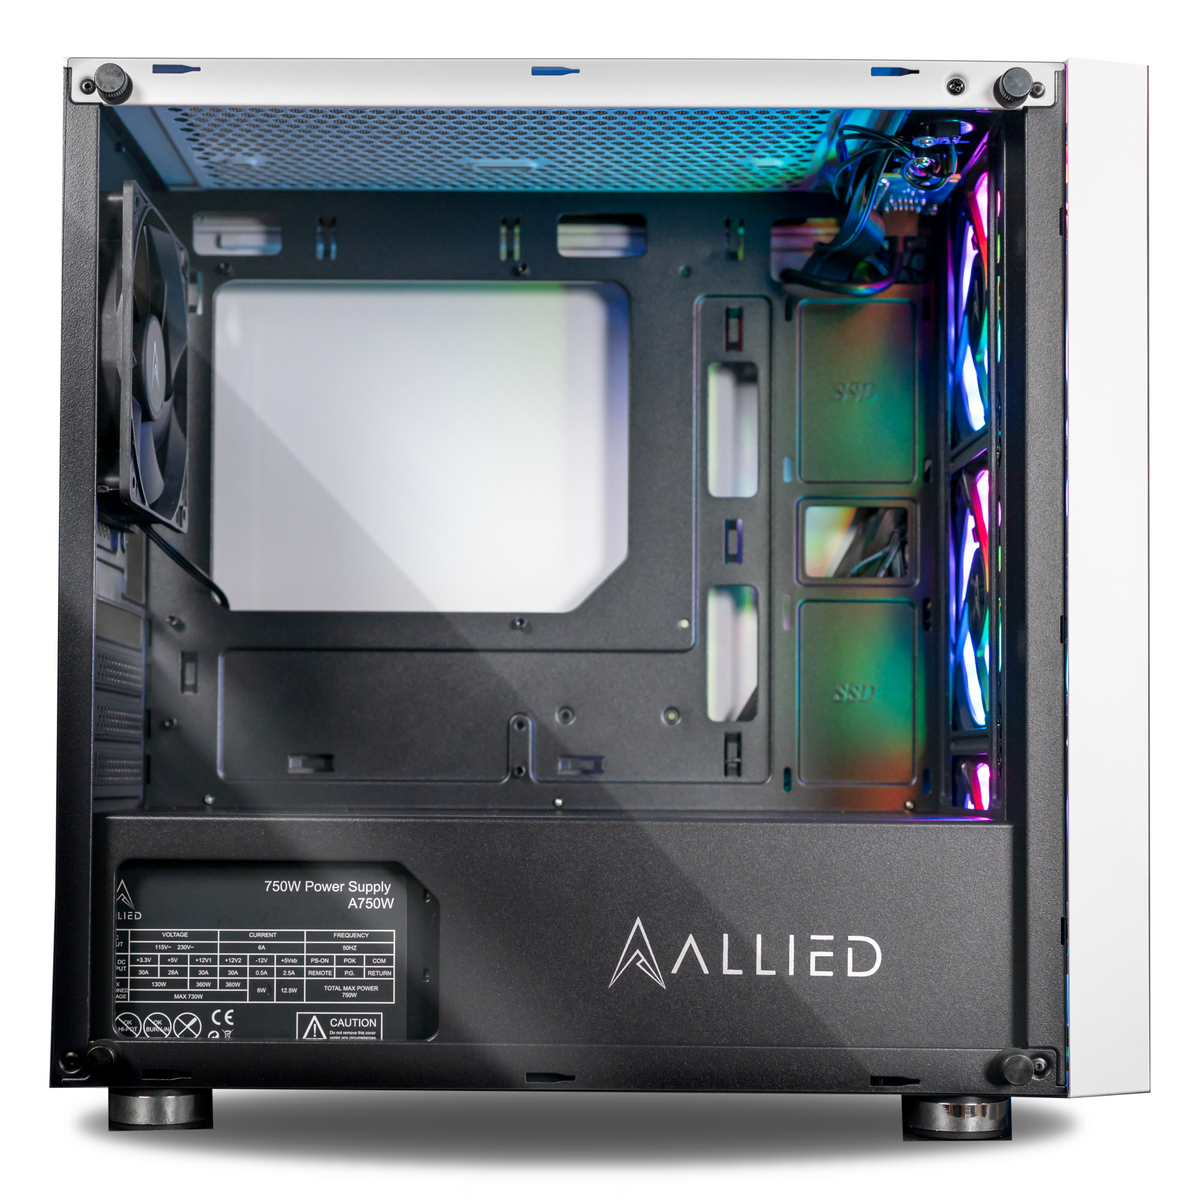 Allied Stinger-A: AMD Ryzen 7 5800X